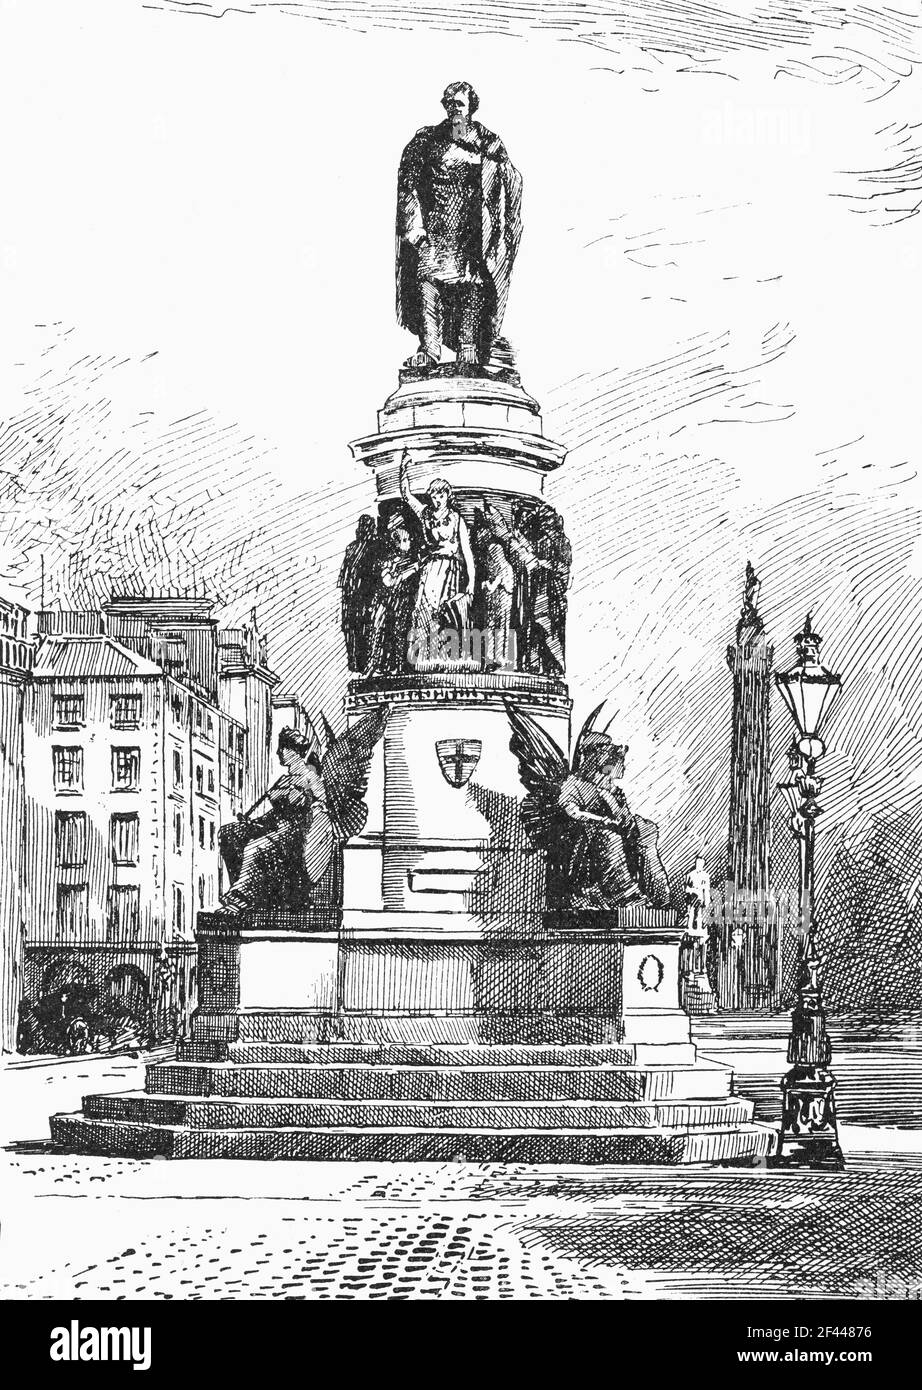 Illustration du XIXe siècle de la statue commandée en 1880 pour commémorer Daniel O’Connell (1775-1847) après quoi la rue O’Connell a été renommée après l’indépendance irlandaise. O’Connell est né à Kerry et croyait en des tactiques pacifiques pour parvenir au changement. Il a lutté pour l'émancipation catholique au sein du système parlementaire britannique et pour l'abrogation de l'Acte d'Union. Le monument a été sculpté par John Henry Foley qui était le principal sculpteur de l'époque, la statue de O'Connell et une coupe transversale de personnes de tous les niveaux de la société irlandaise. Banque D'Images